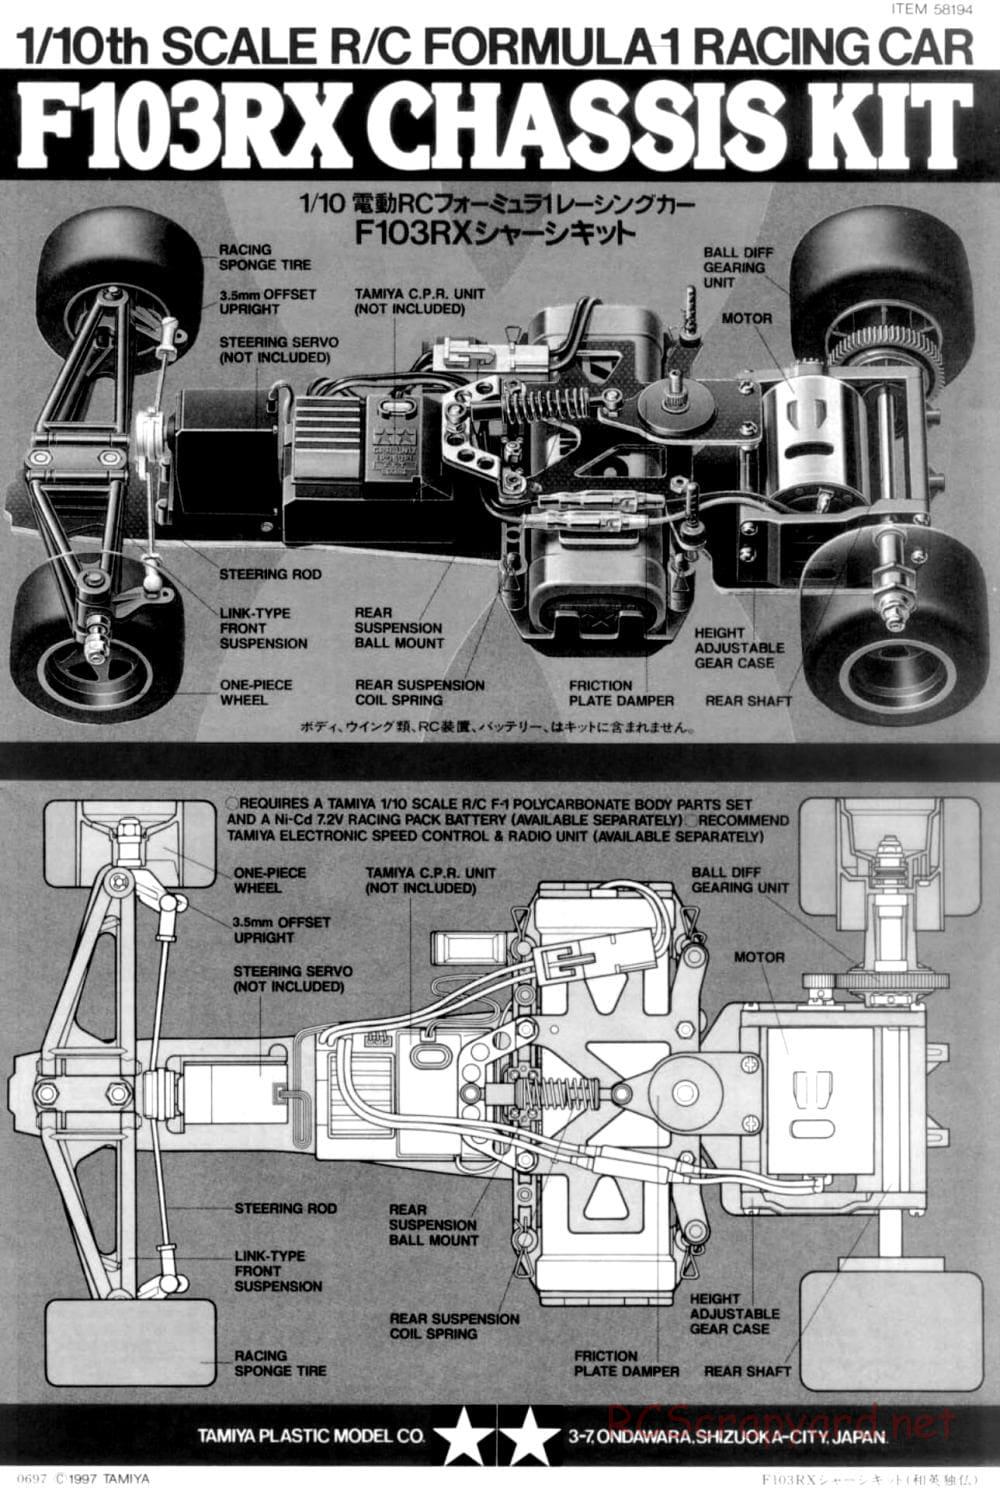 Tamiya - F103RX Chassis - Manual - Page 1